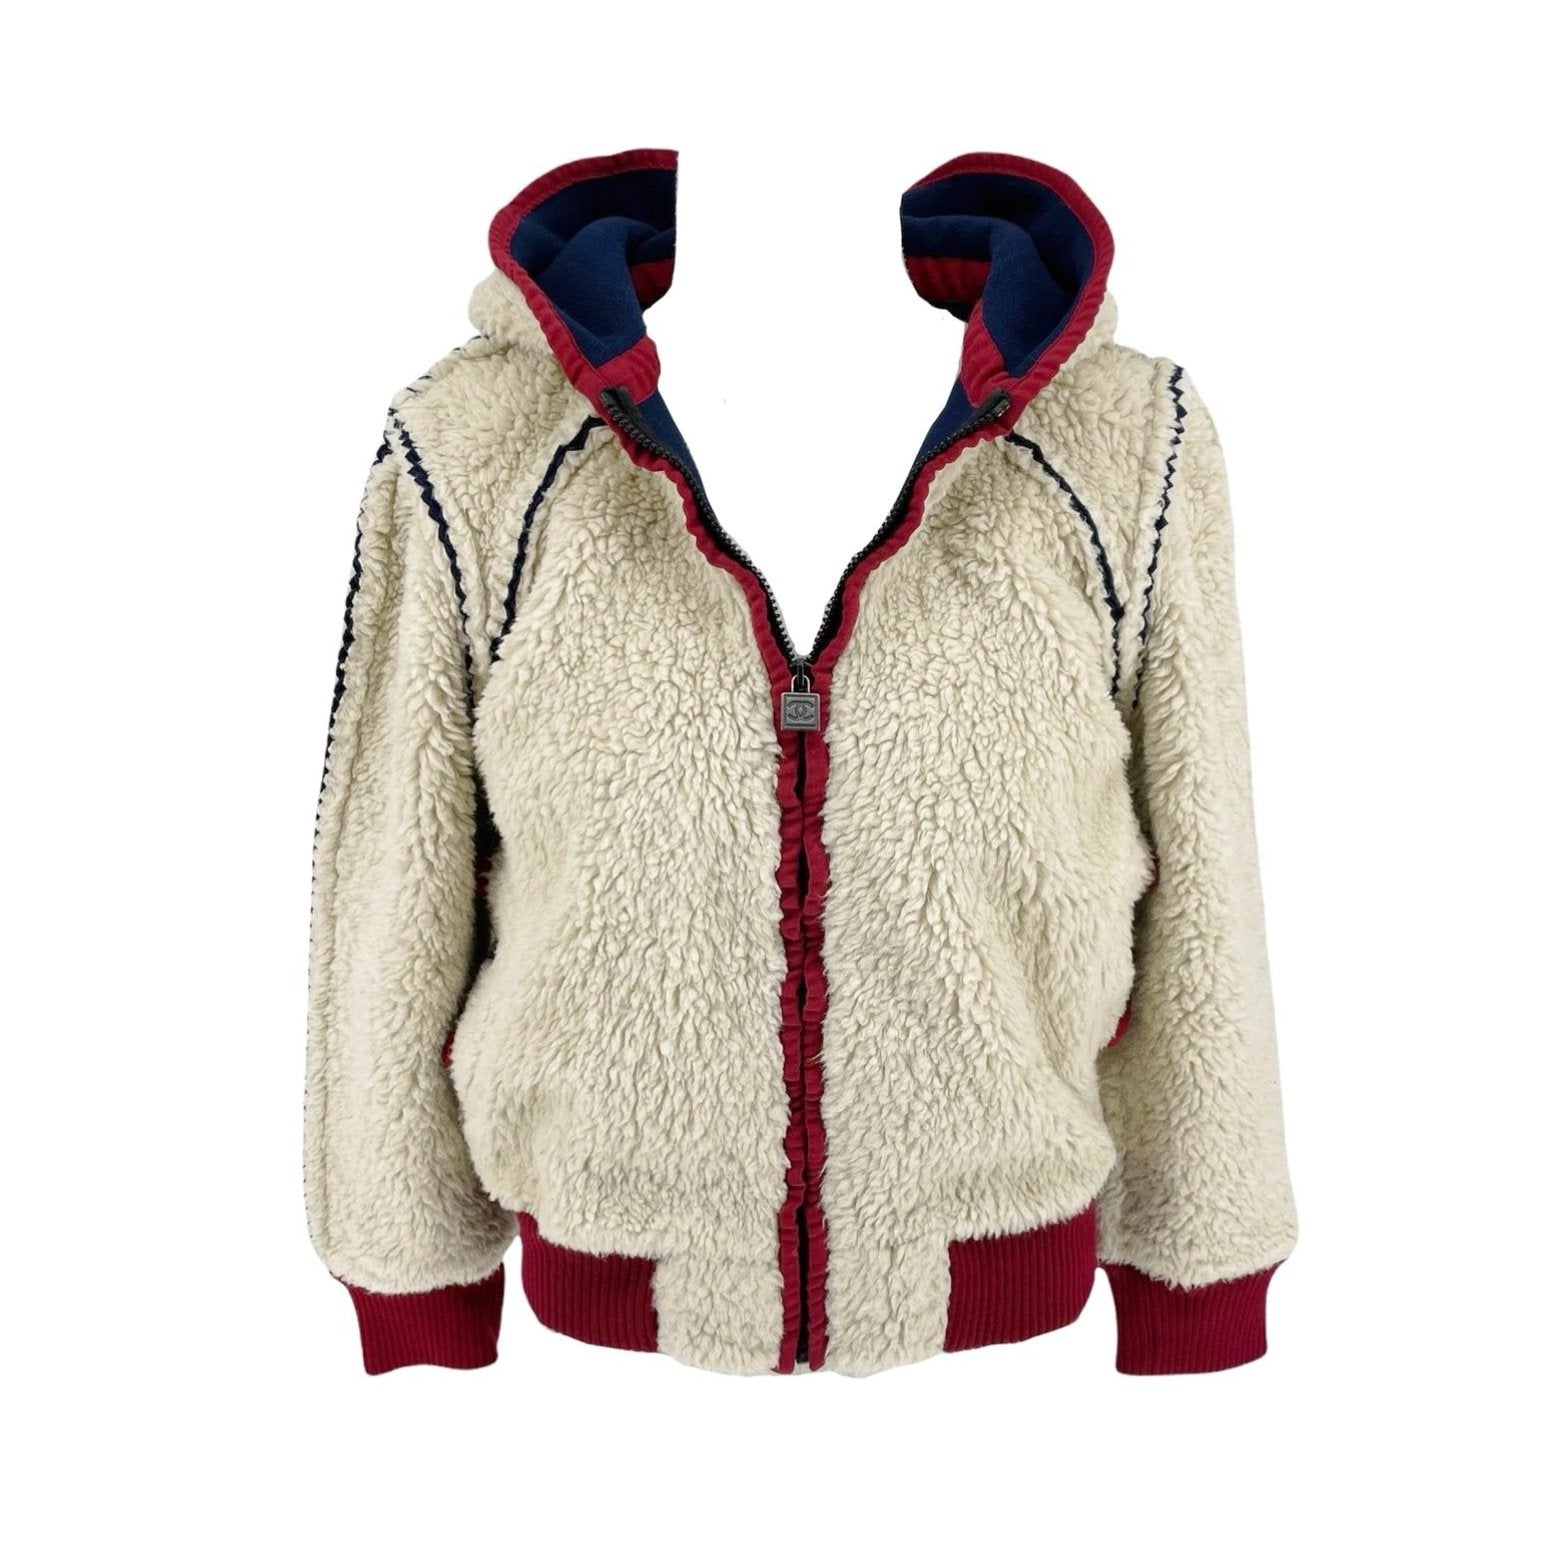 CHANEL 09A Paris-Moscou ecru wool tweed fuzzy trim officer jacket